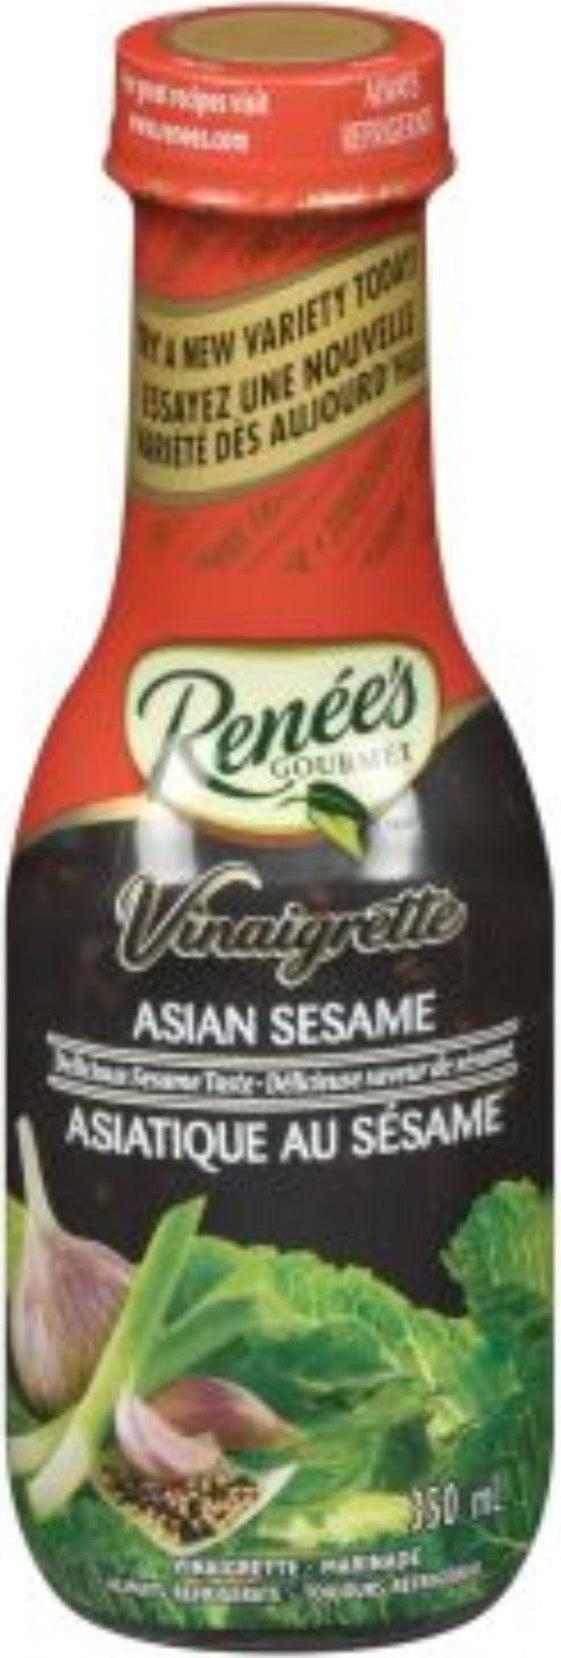 Renee's - Asian Sesame Vinaigrette 4L